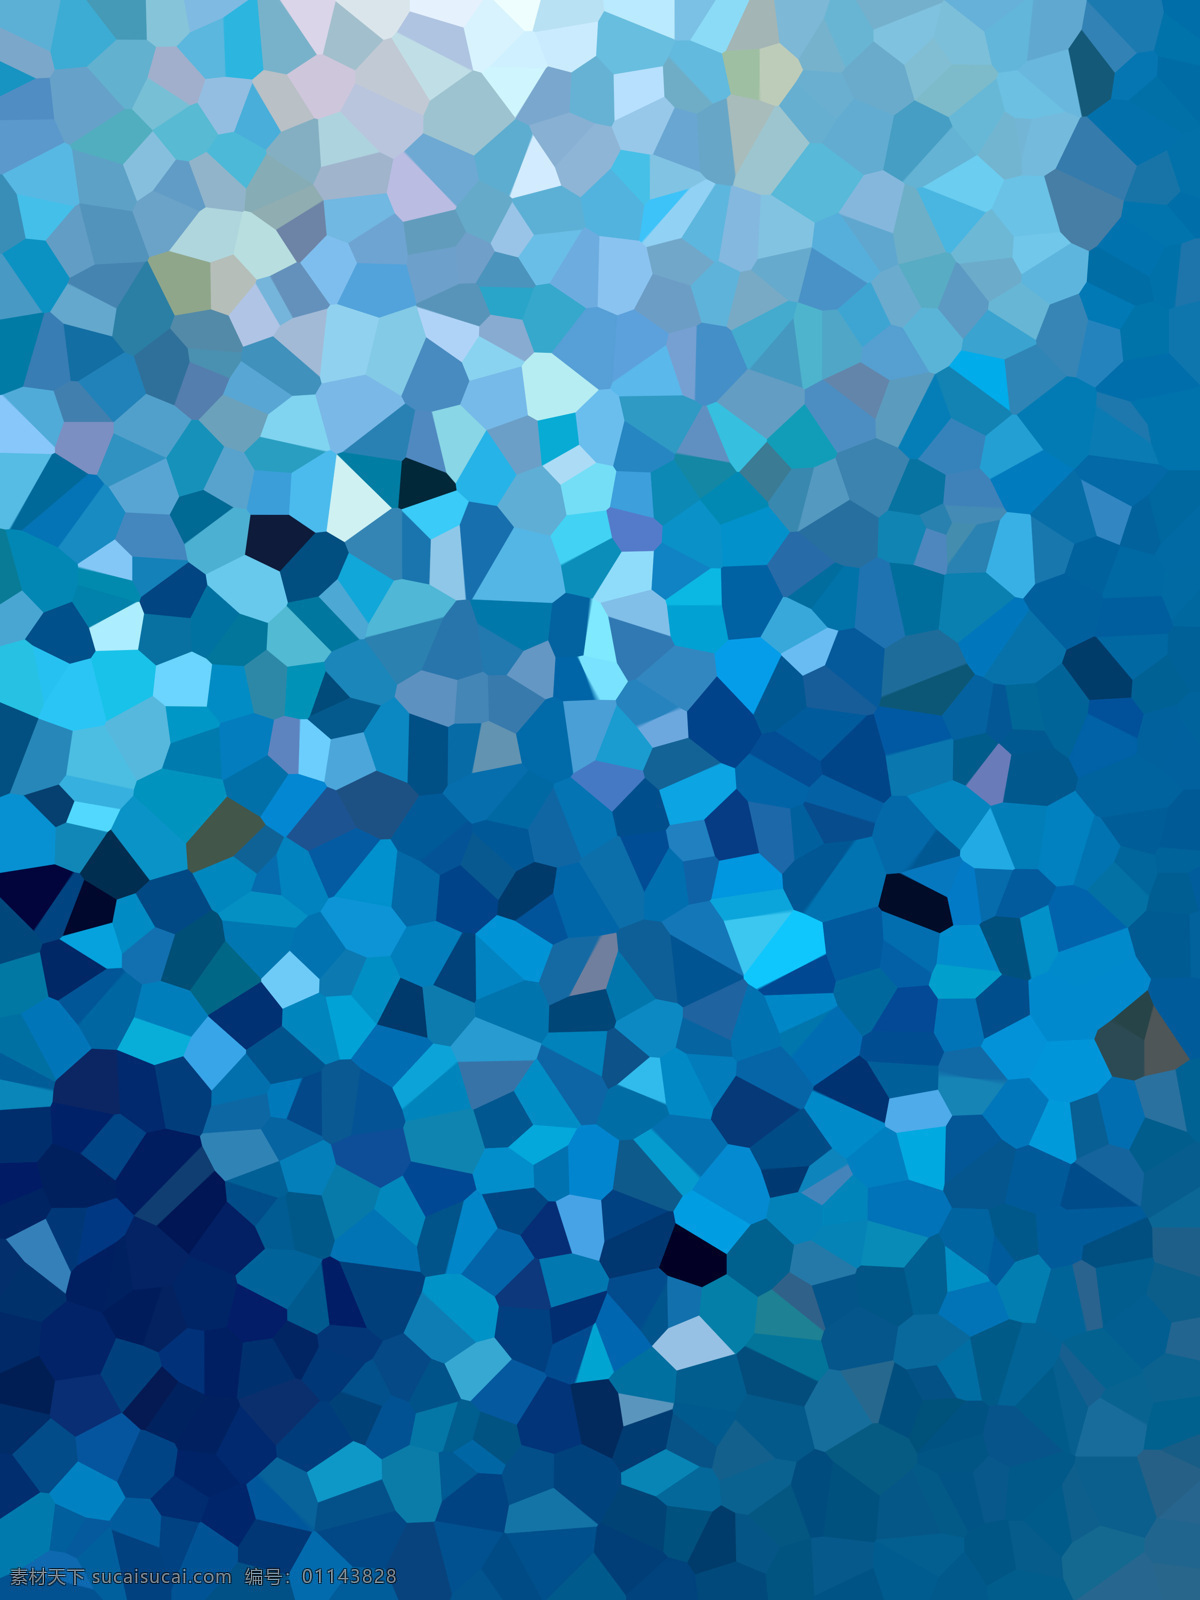 天蓝色背景 三角块 low polly 晶格化 几何 多边化 低面 天蓝色 蓝色 背景 底纹边框 抽象底纹